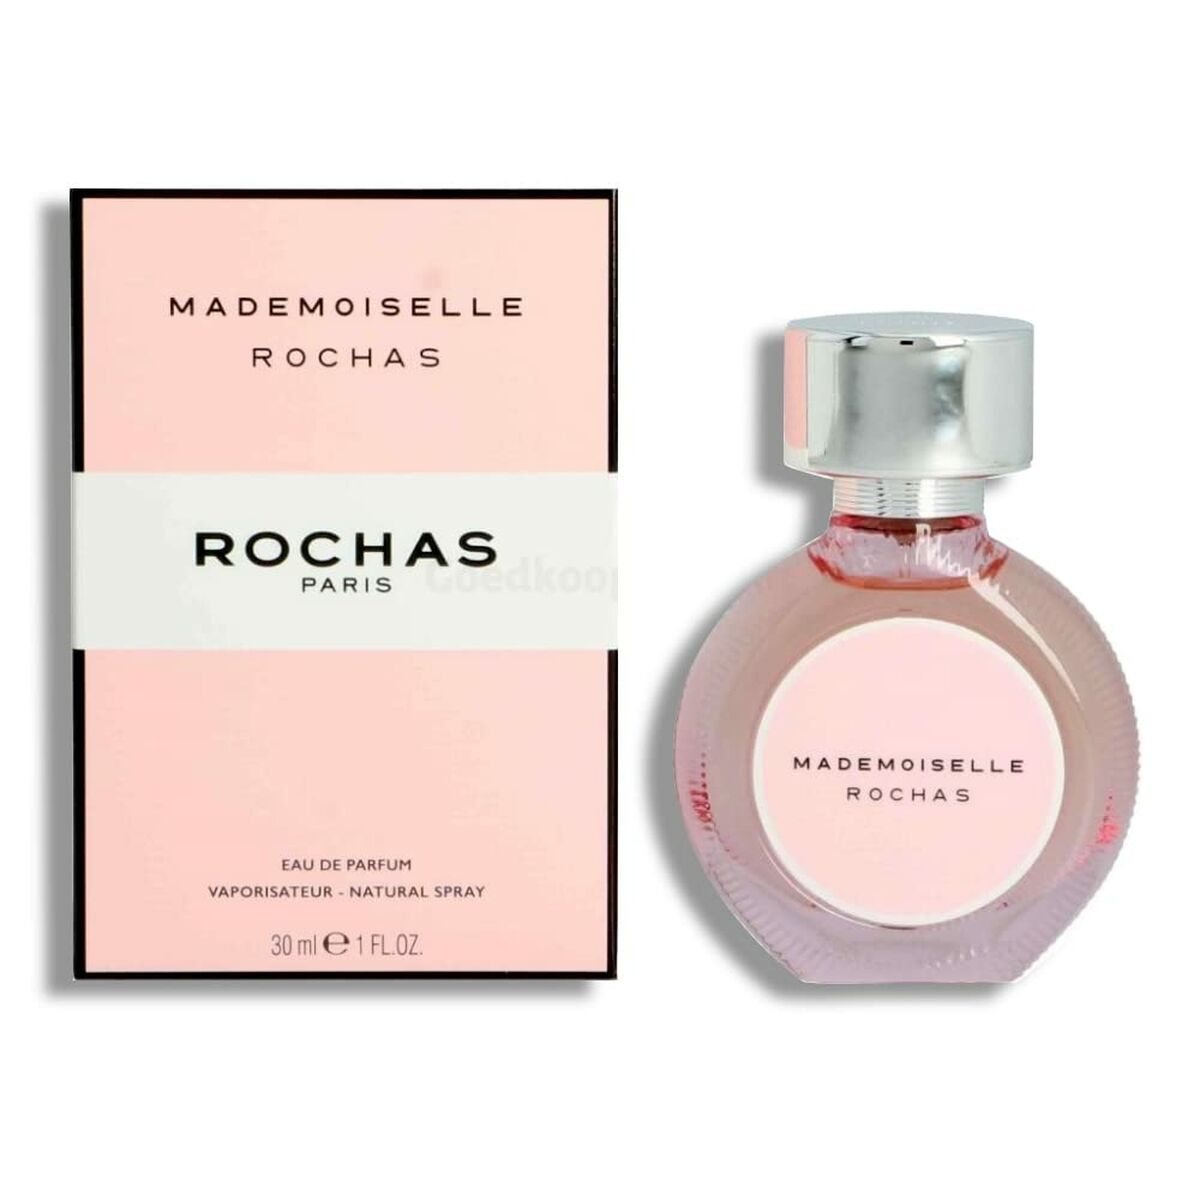 Perfume de femmes Rochas mademoiselle EDP 30 ml